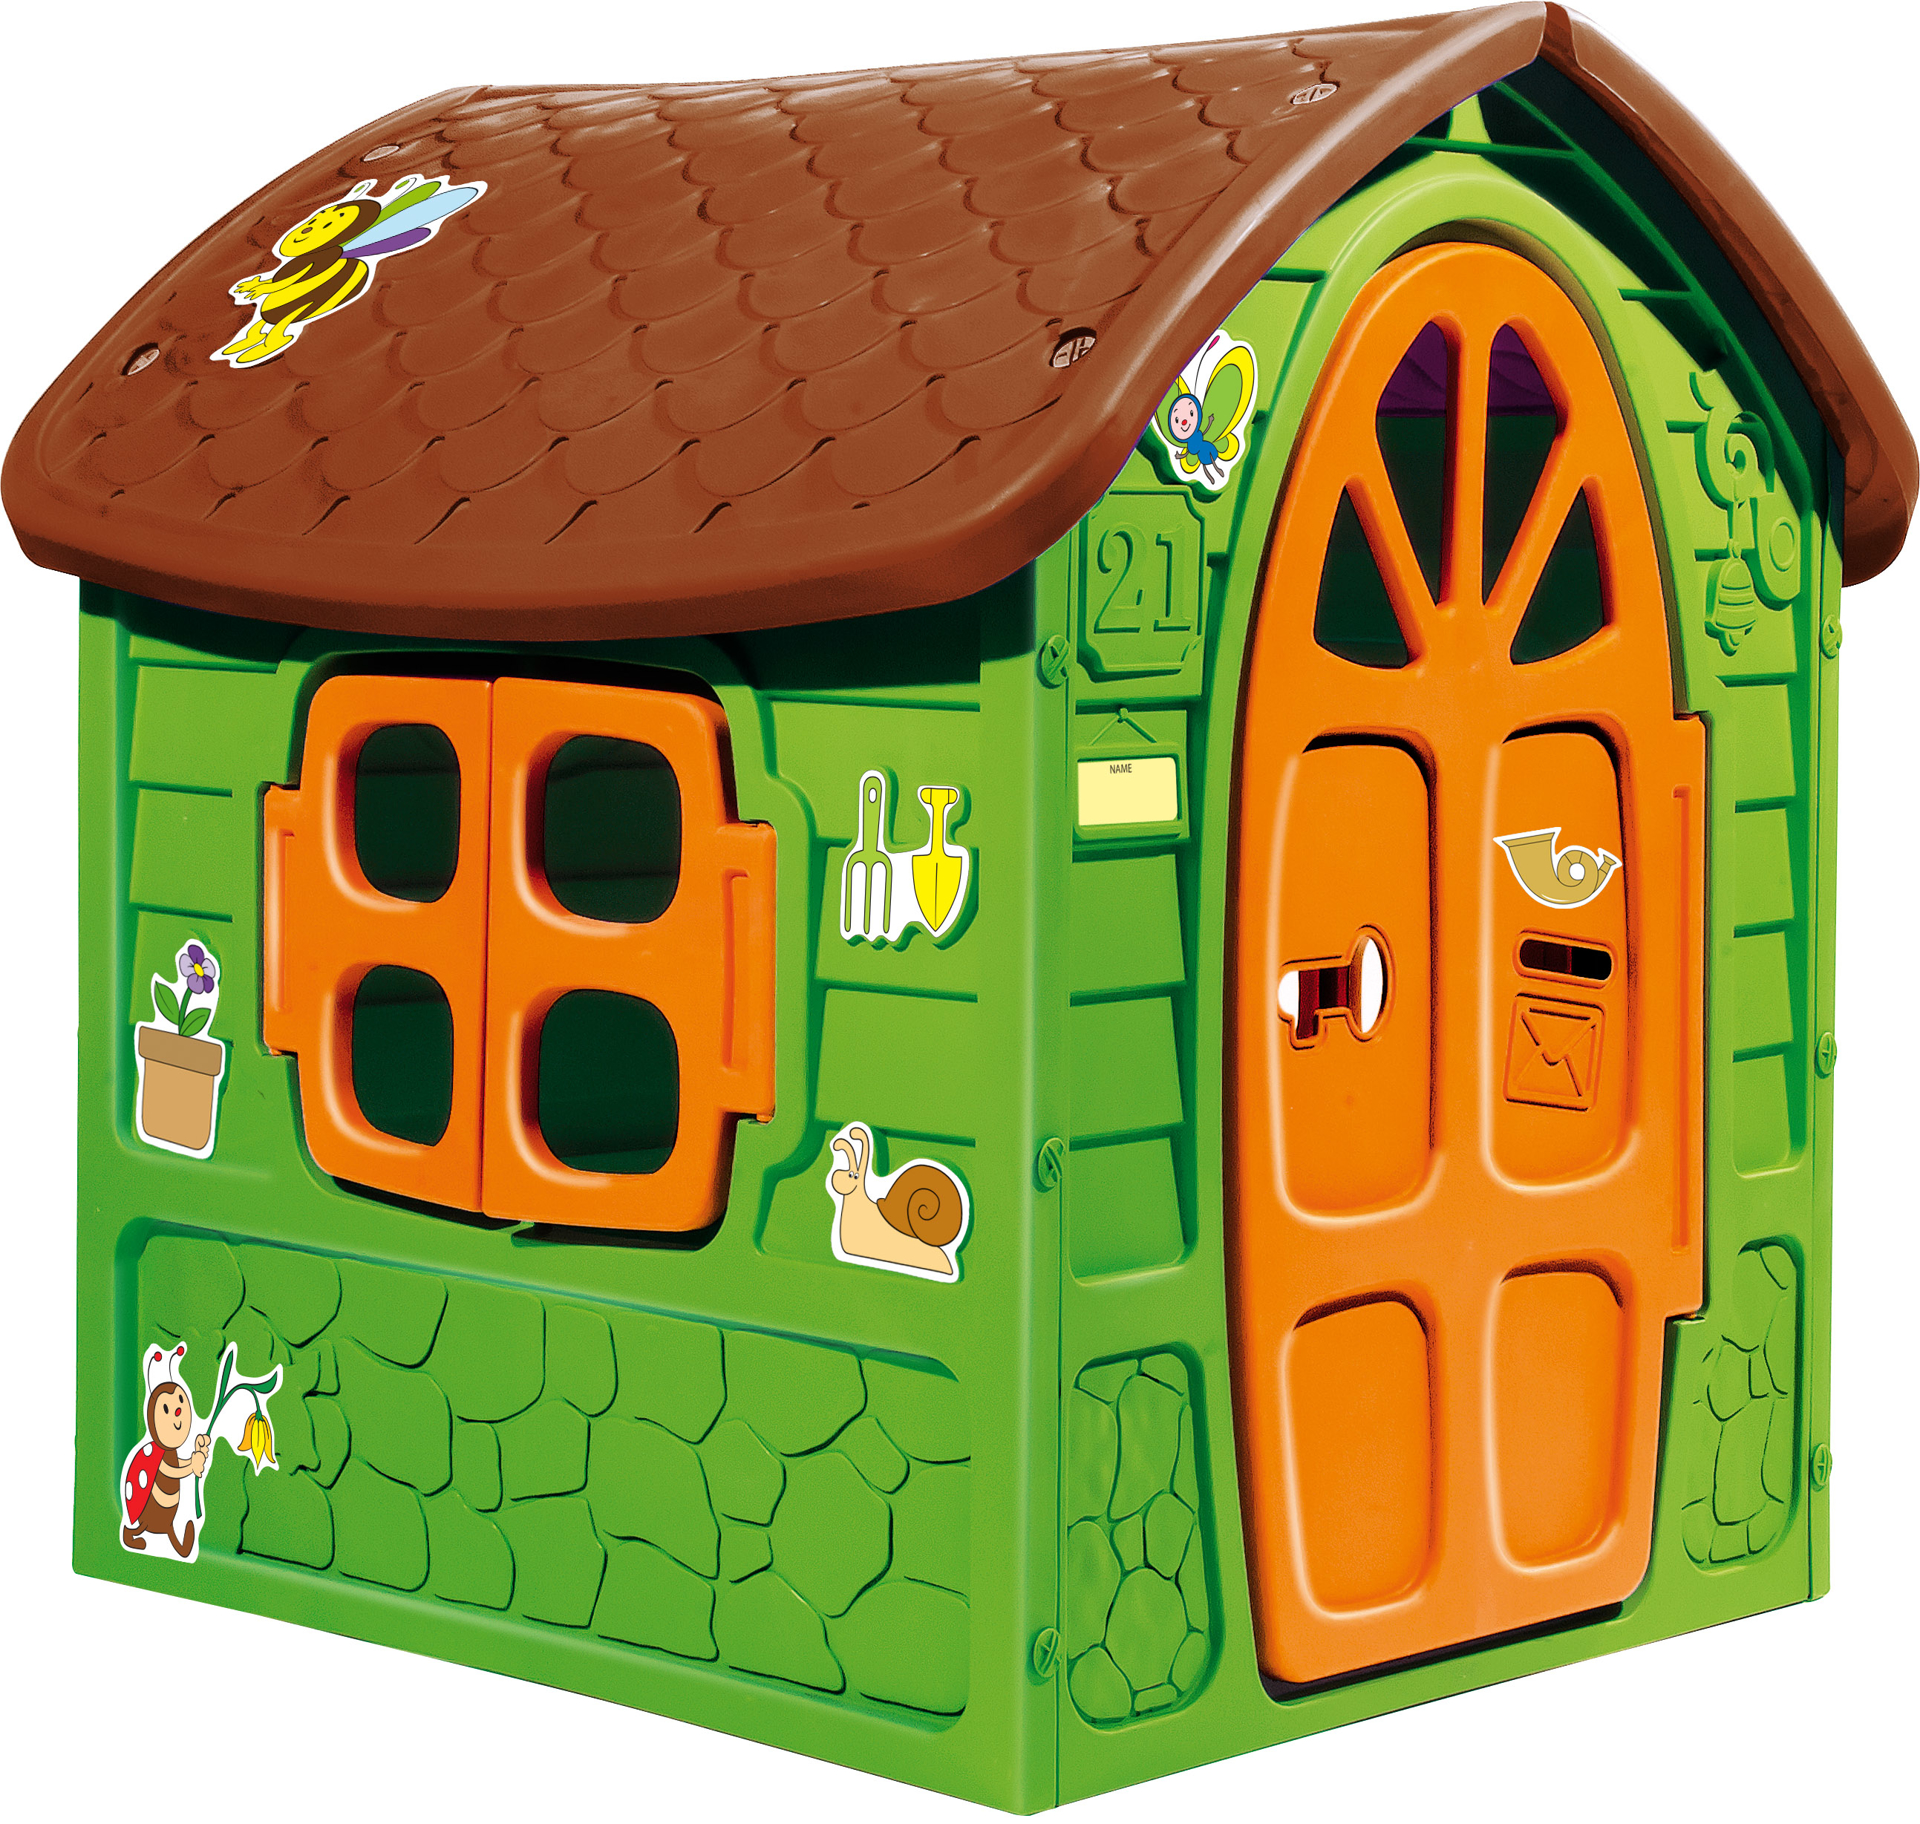 Casuta de joaca pentru copii Dohany verde cu acoperis maro, 5075